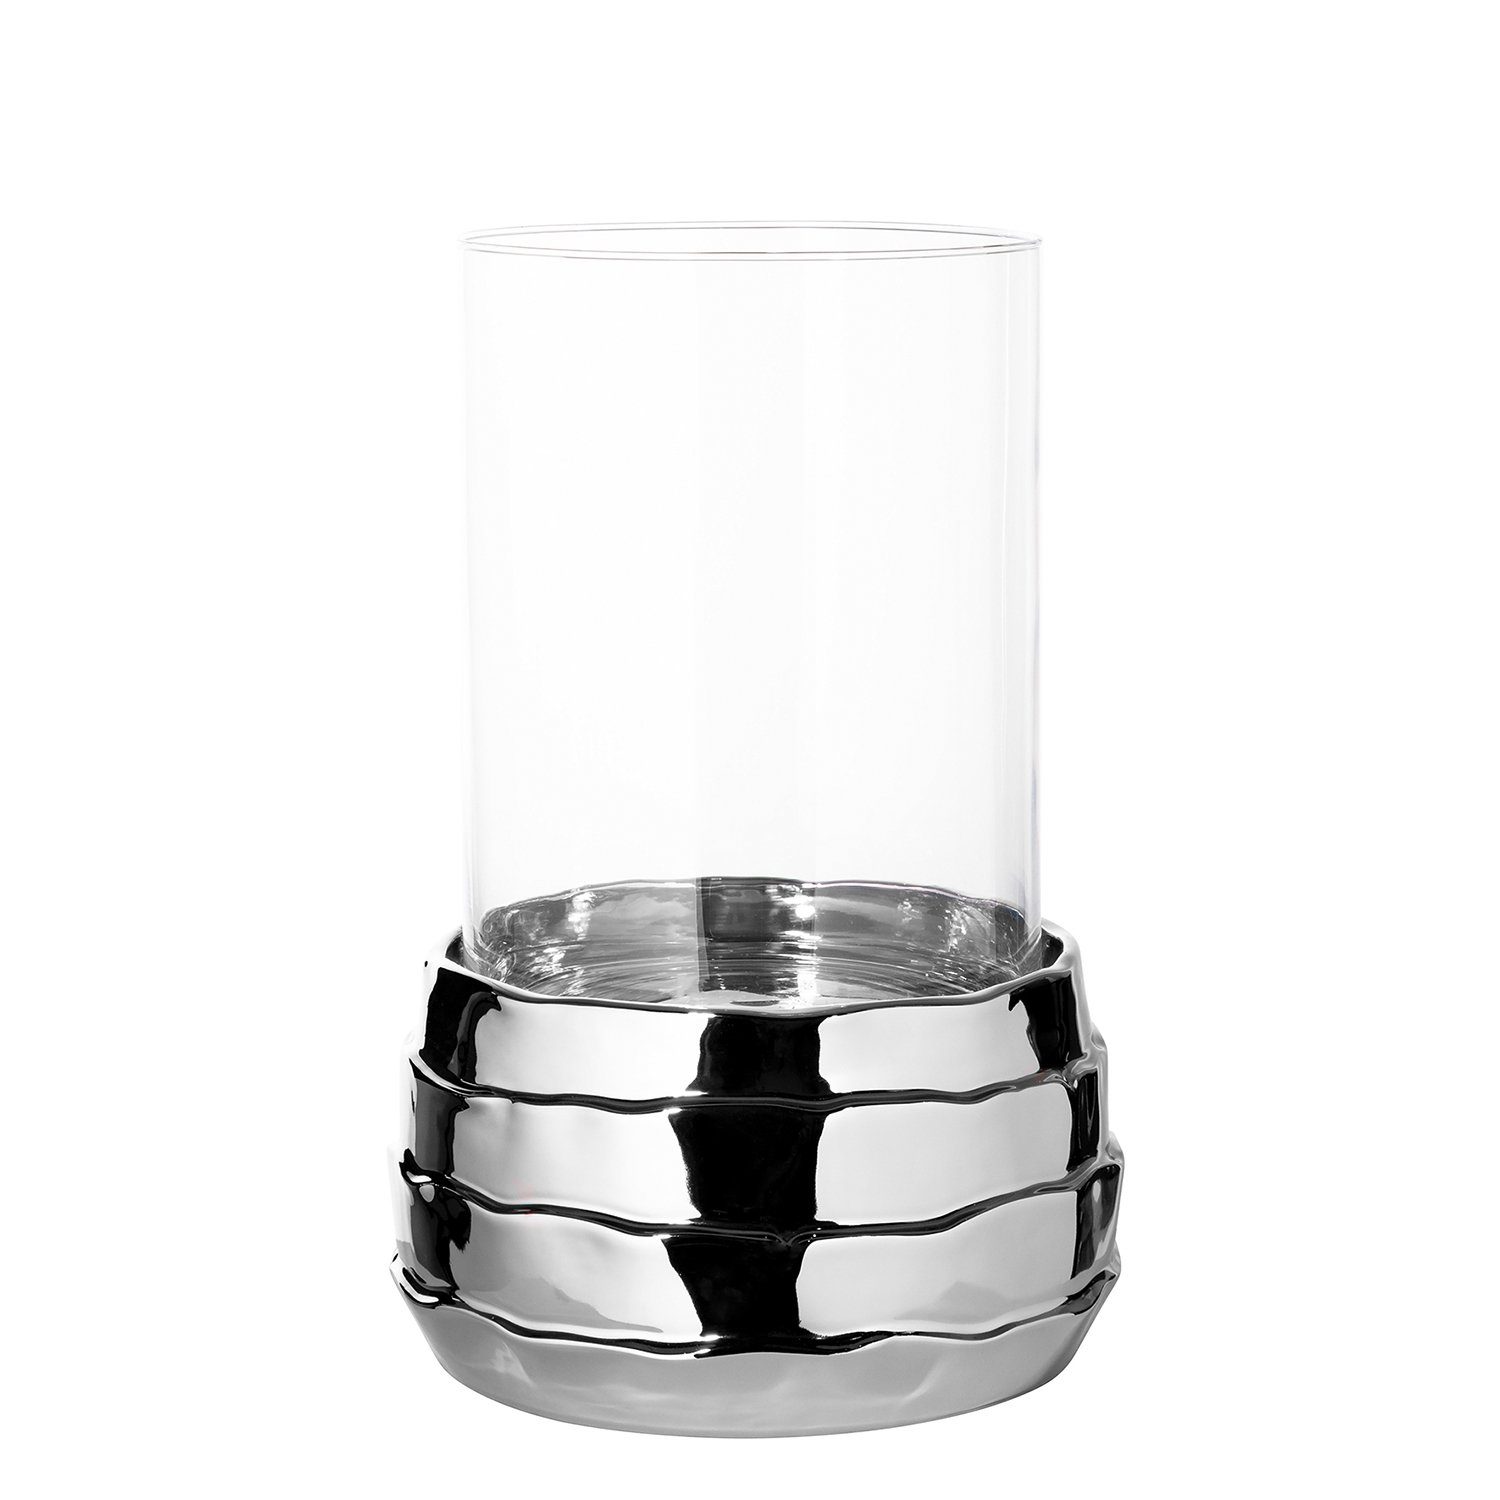 Fink Windlicht Windlicht COCON - silberfarben - Keramik - Glas - H.34cm x Ø 25cm (Keramikbasis + Glas), nicht outdoorgeeignet